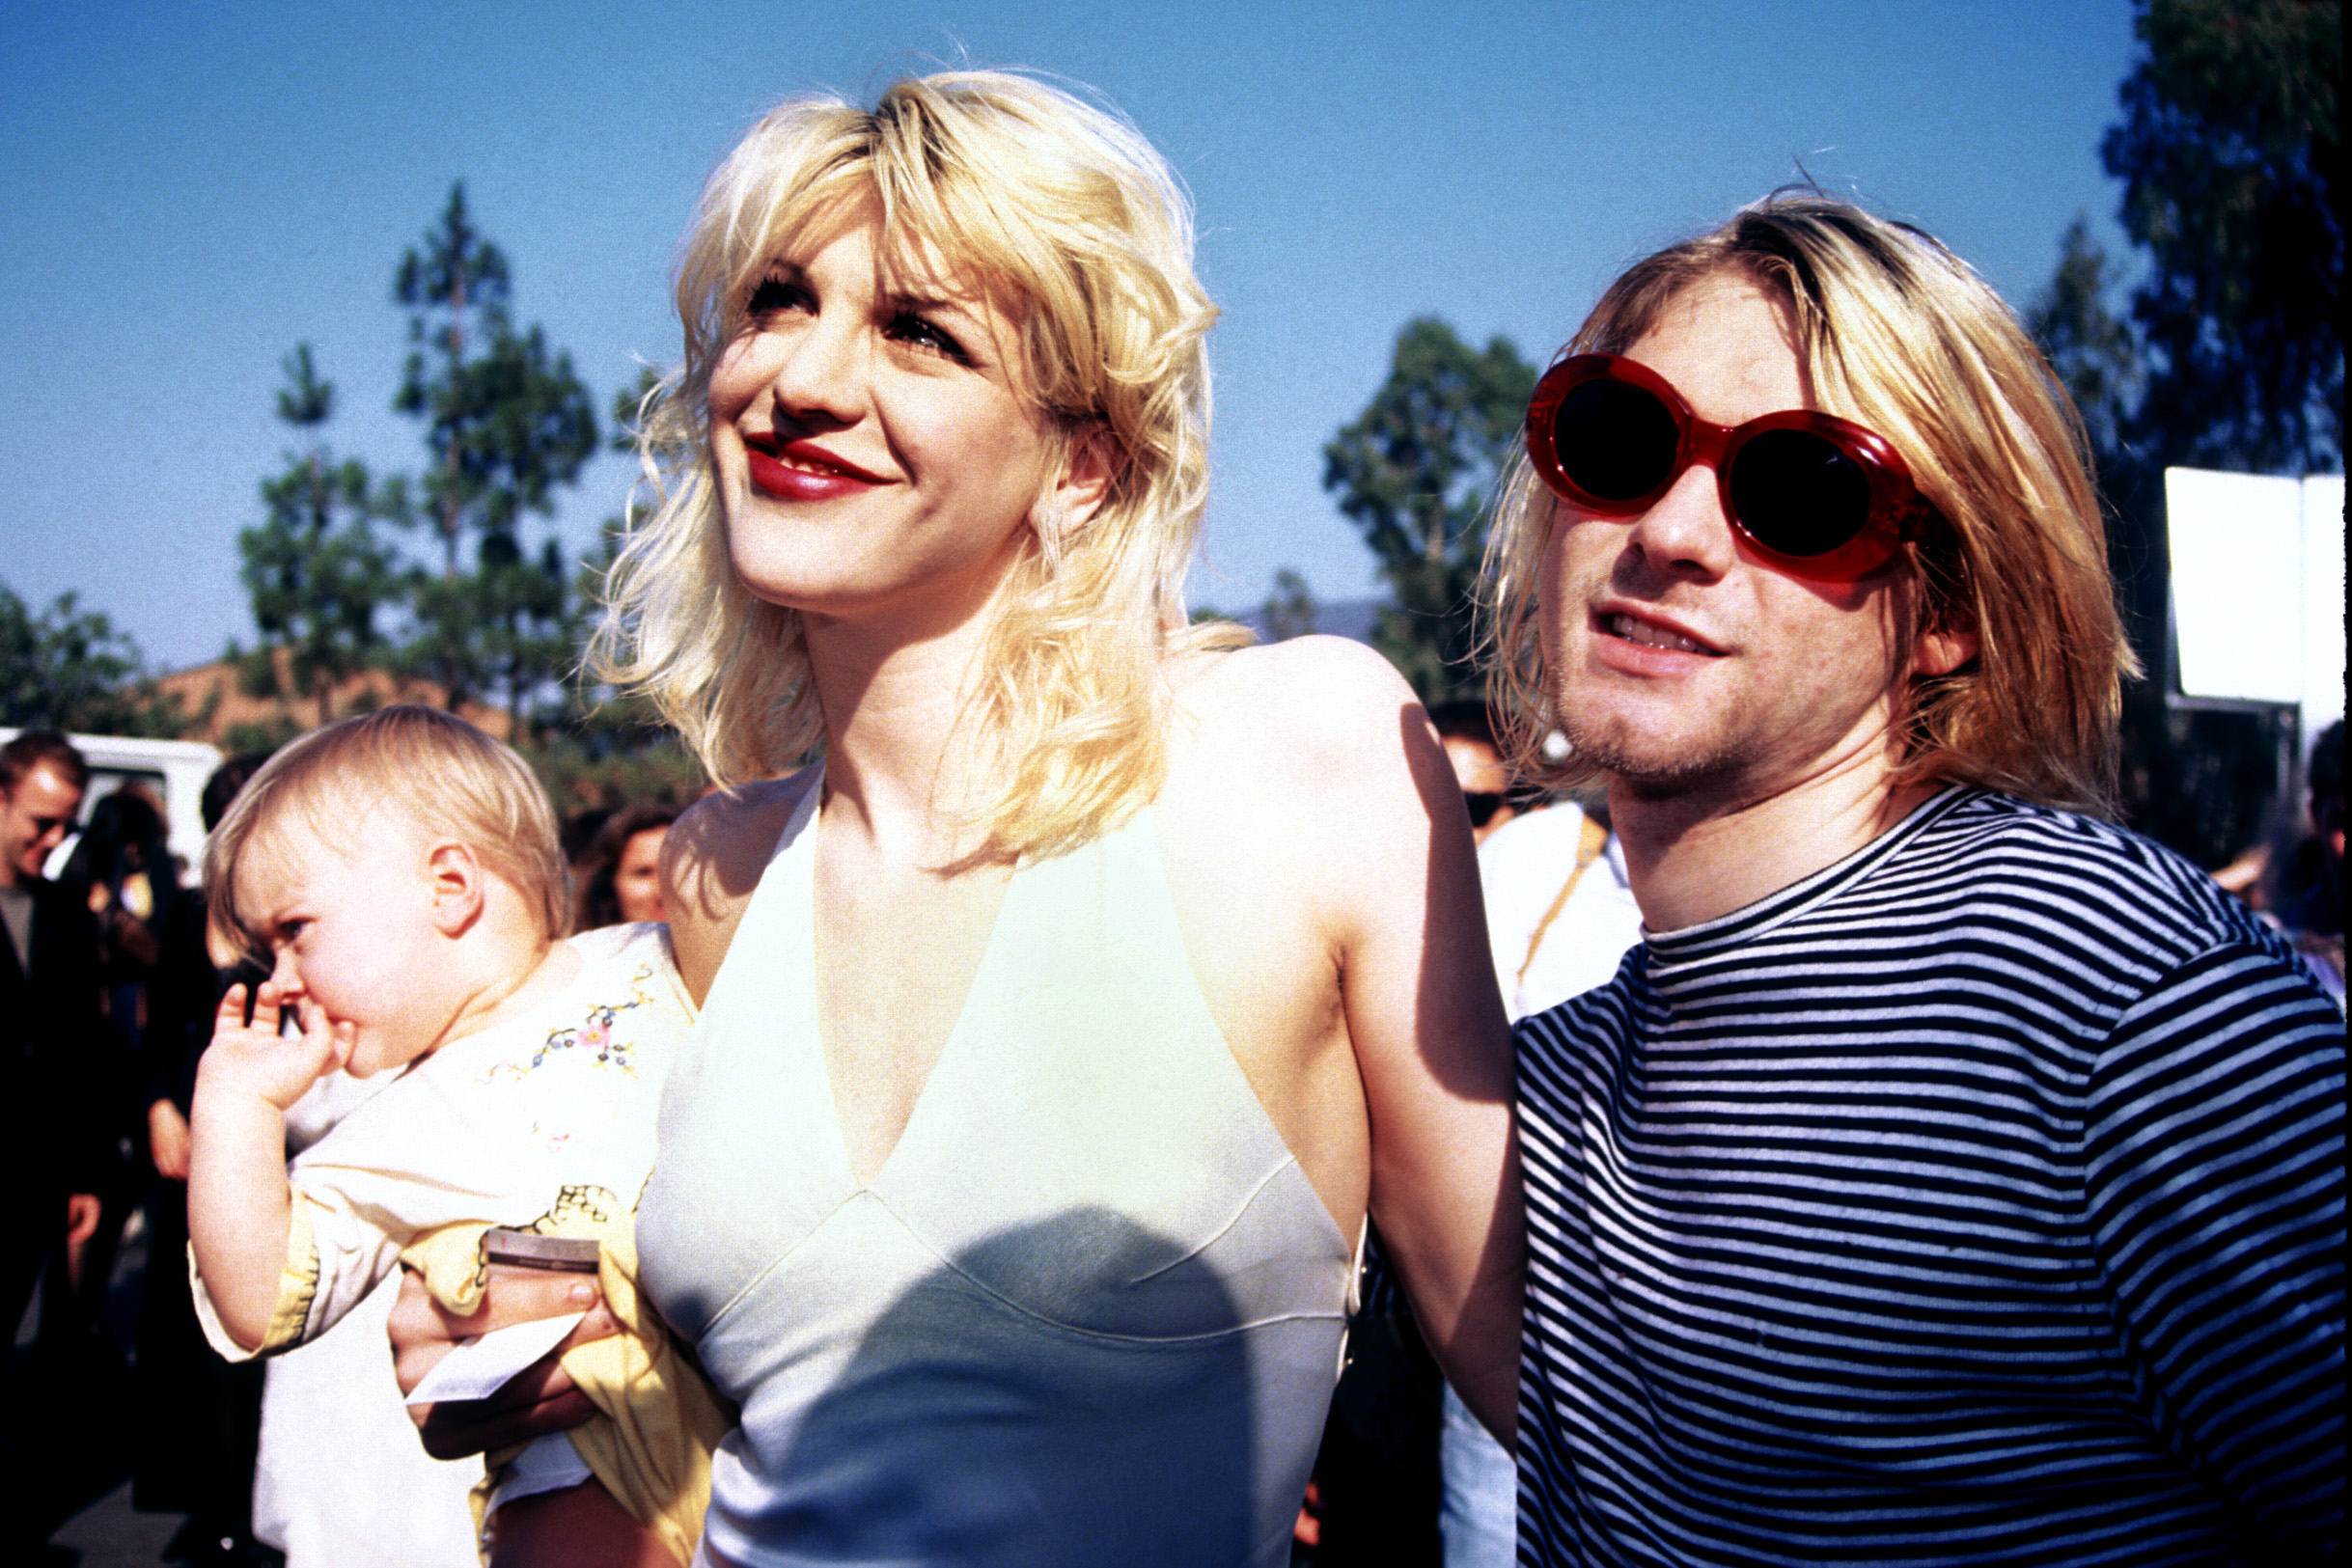 Ein ereignisreicher Tag: Am selben Tag zeigt sich der Nirvana-Sänger zum ersten Mal mit seiner Tochter Francis bei einem öffentlichen Event.